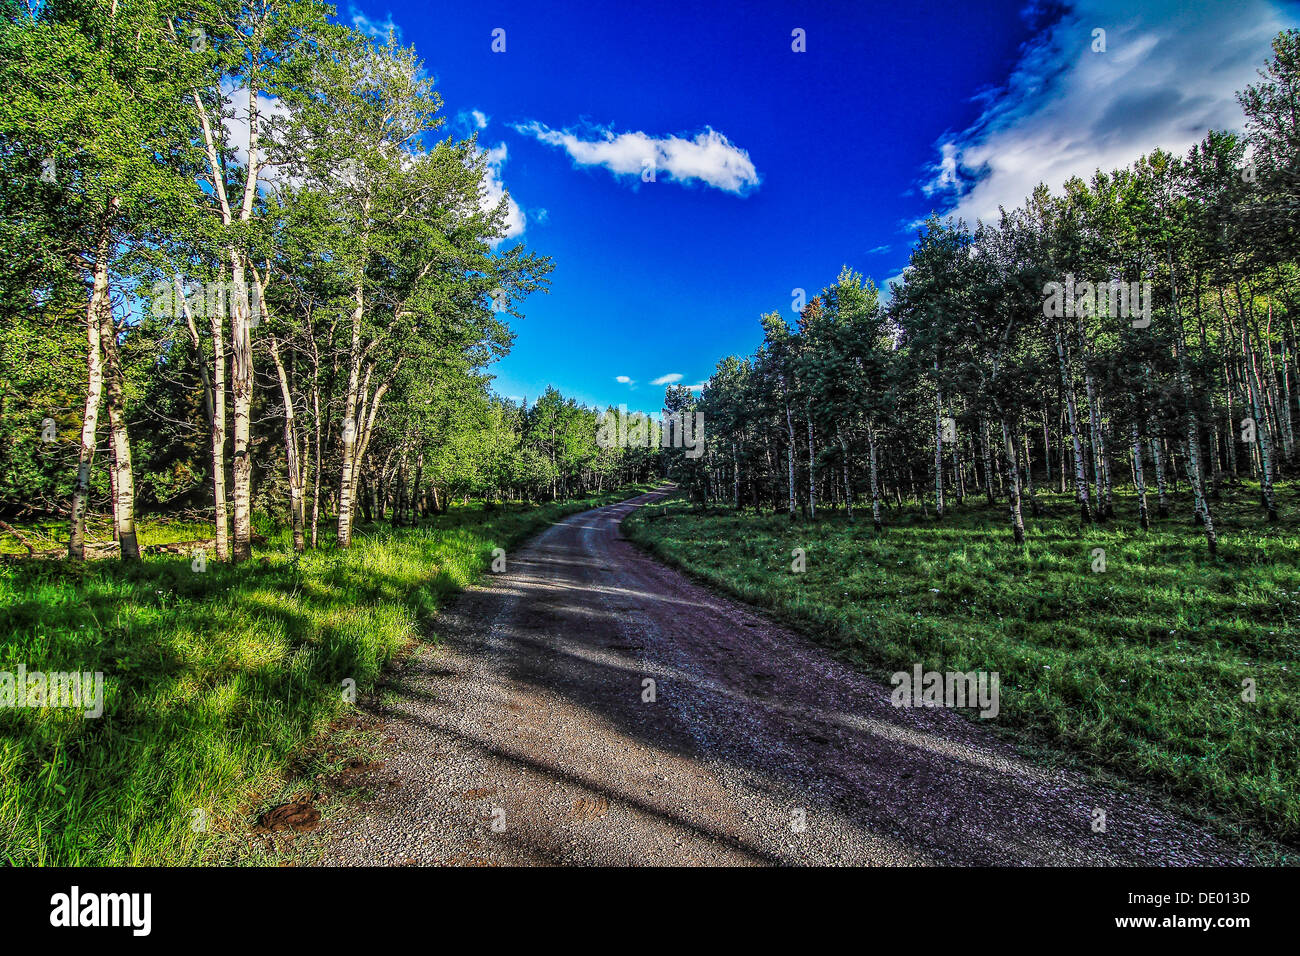 Scenic country road attraverso la foresta con un drammatico cielo blu e nuvole bianche. Nitide e vivaci colori del cielo e alberi. Foto Stock